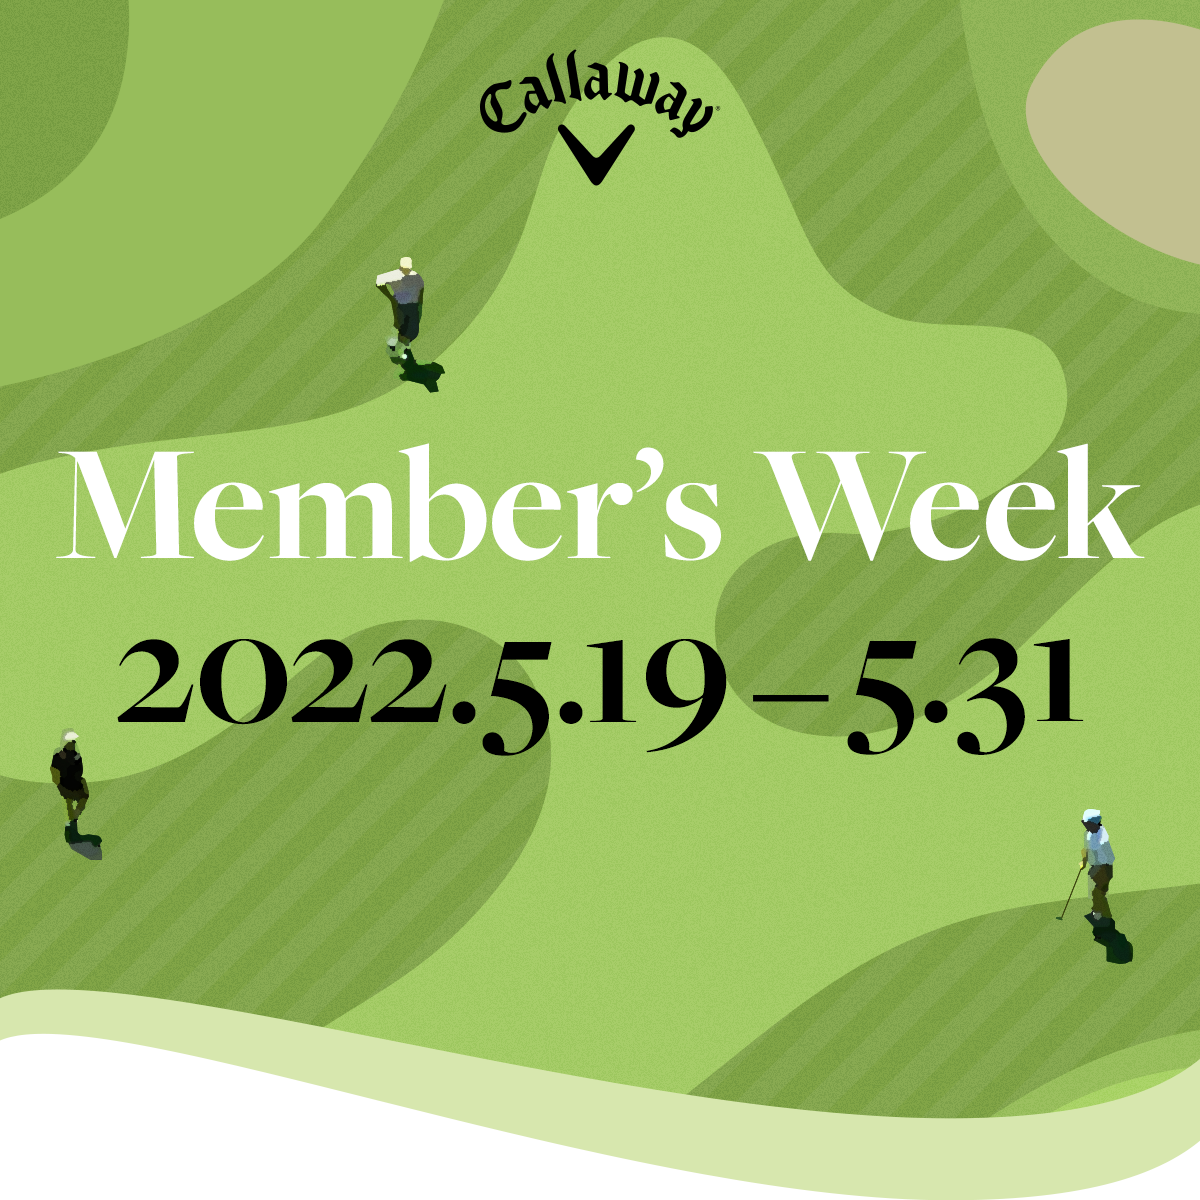 Member's Week